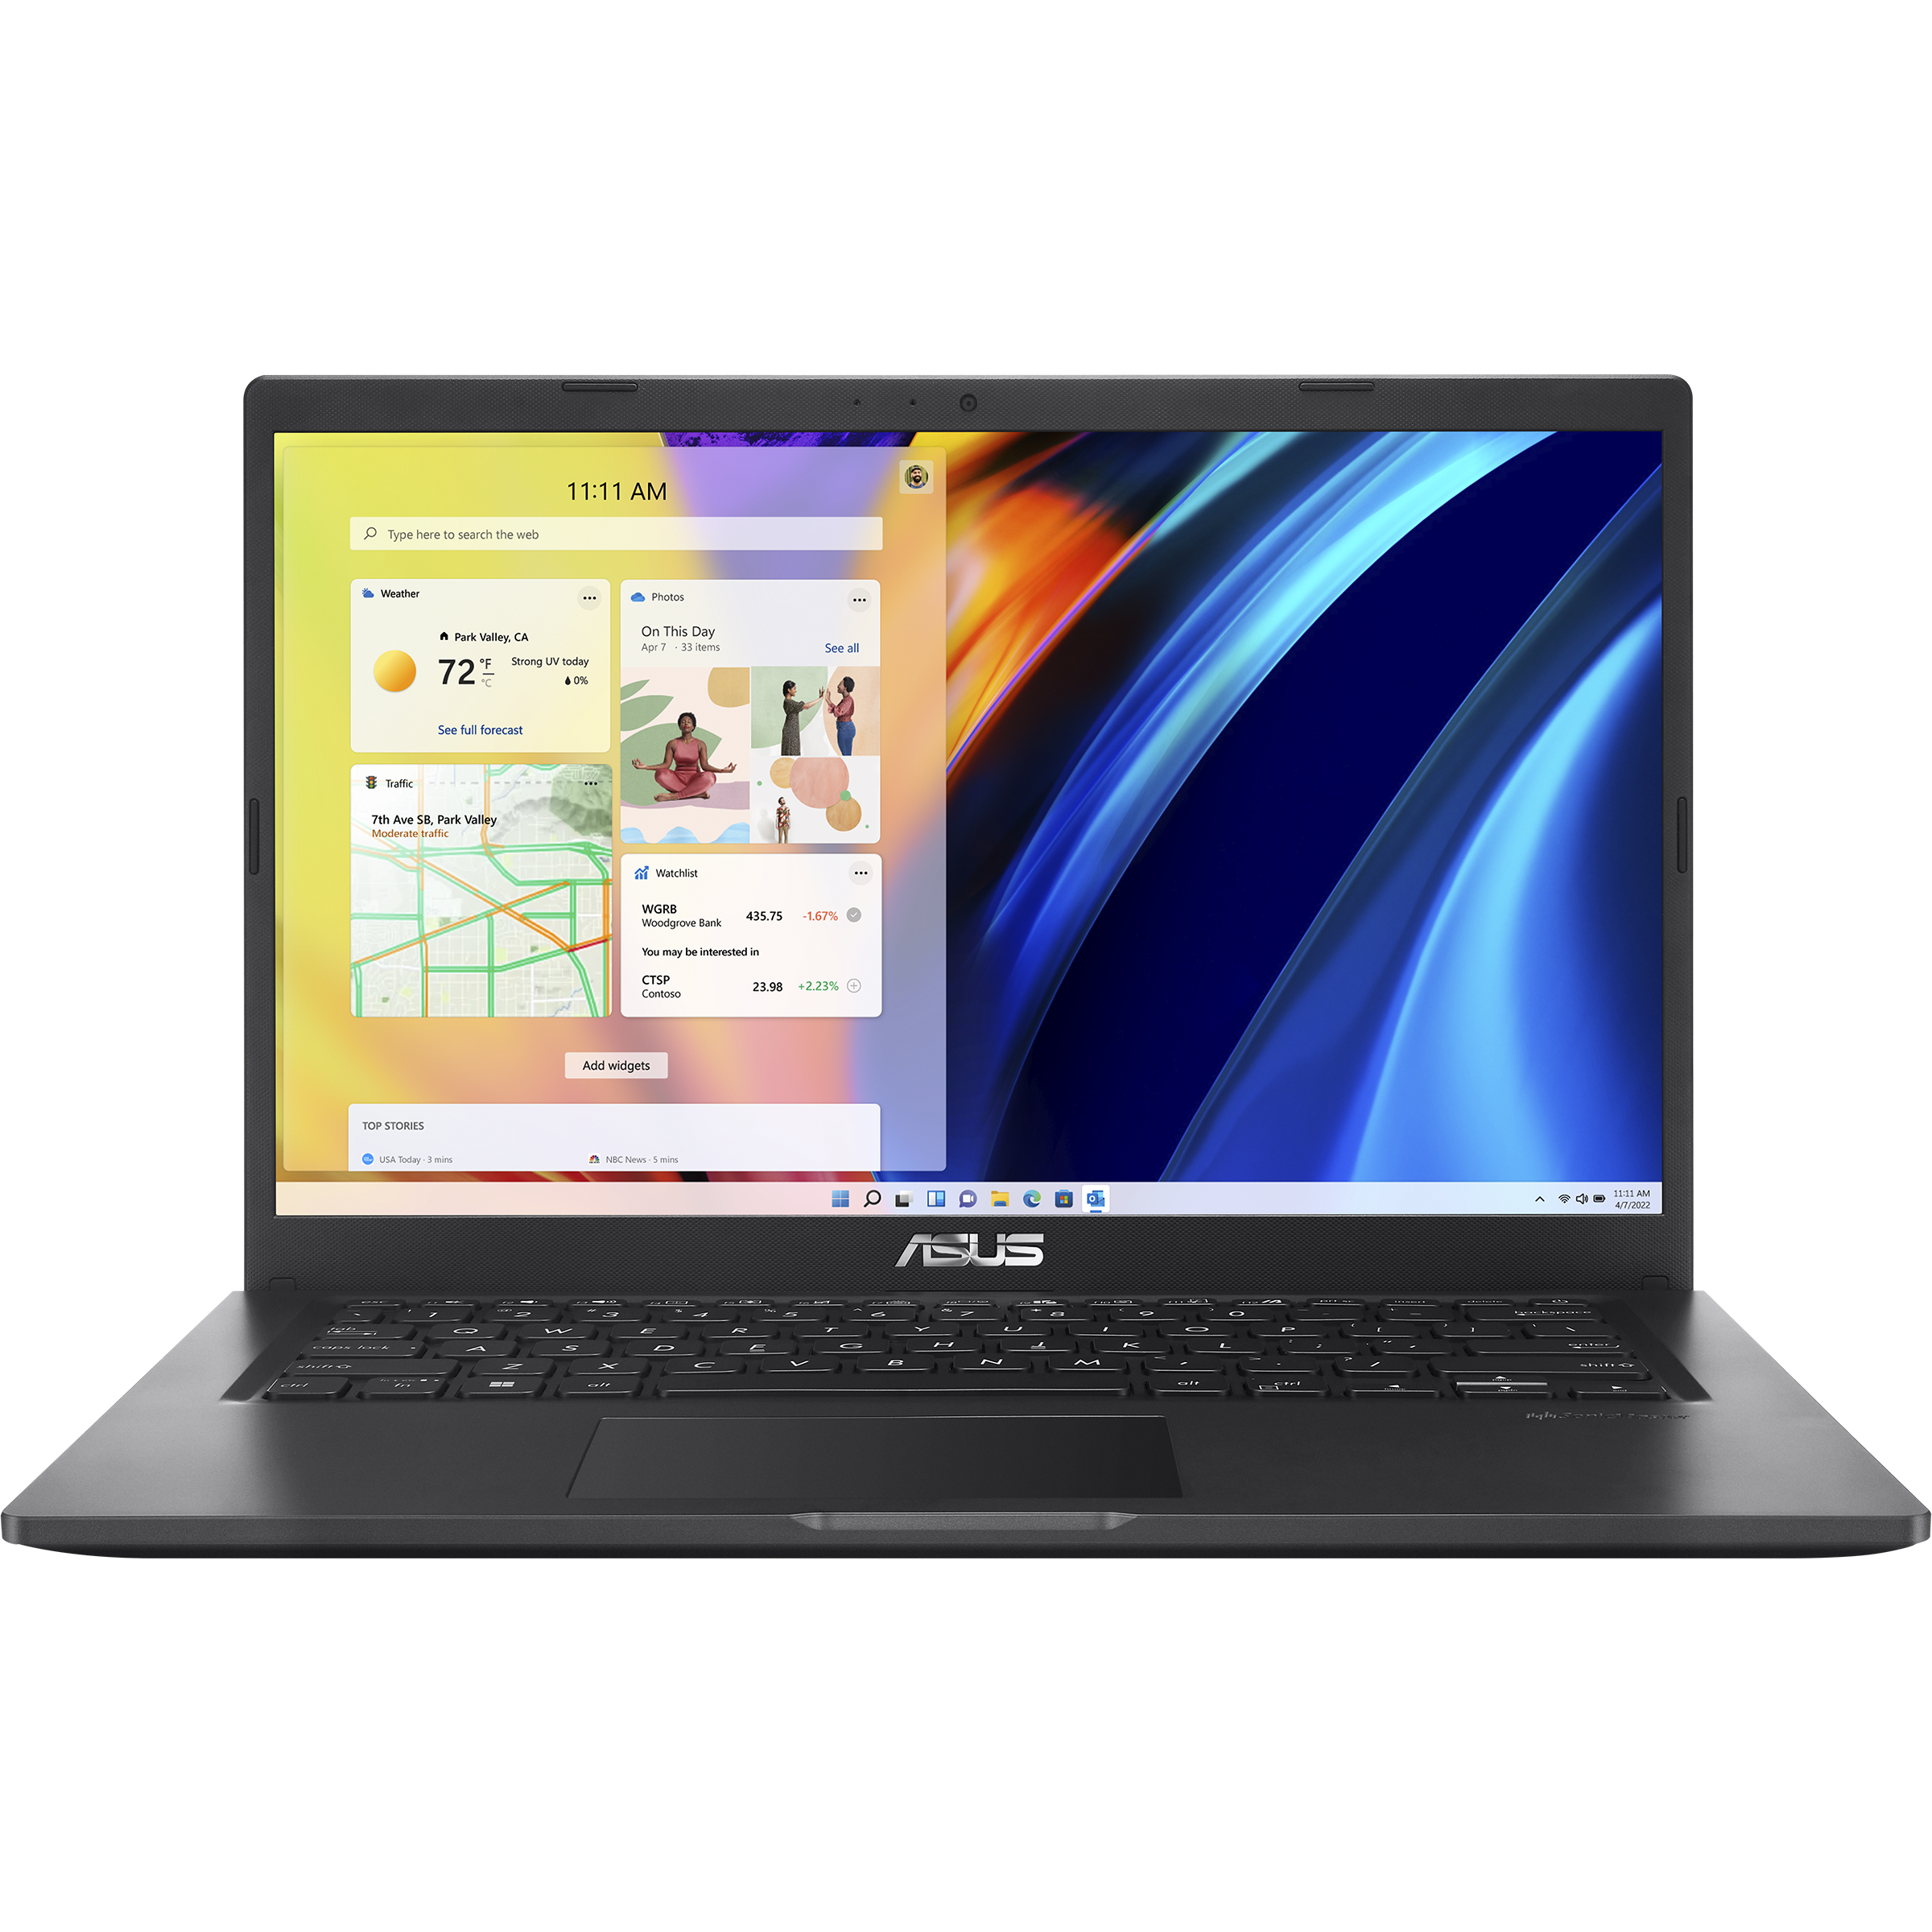 ASUS VivoBook 14 Laptop, Intel Pentium Processor, 4GB RAM